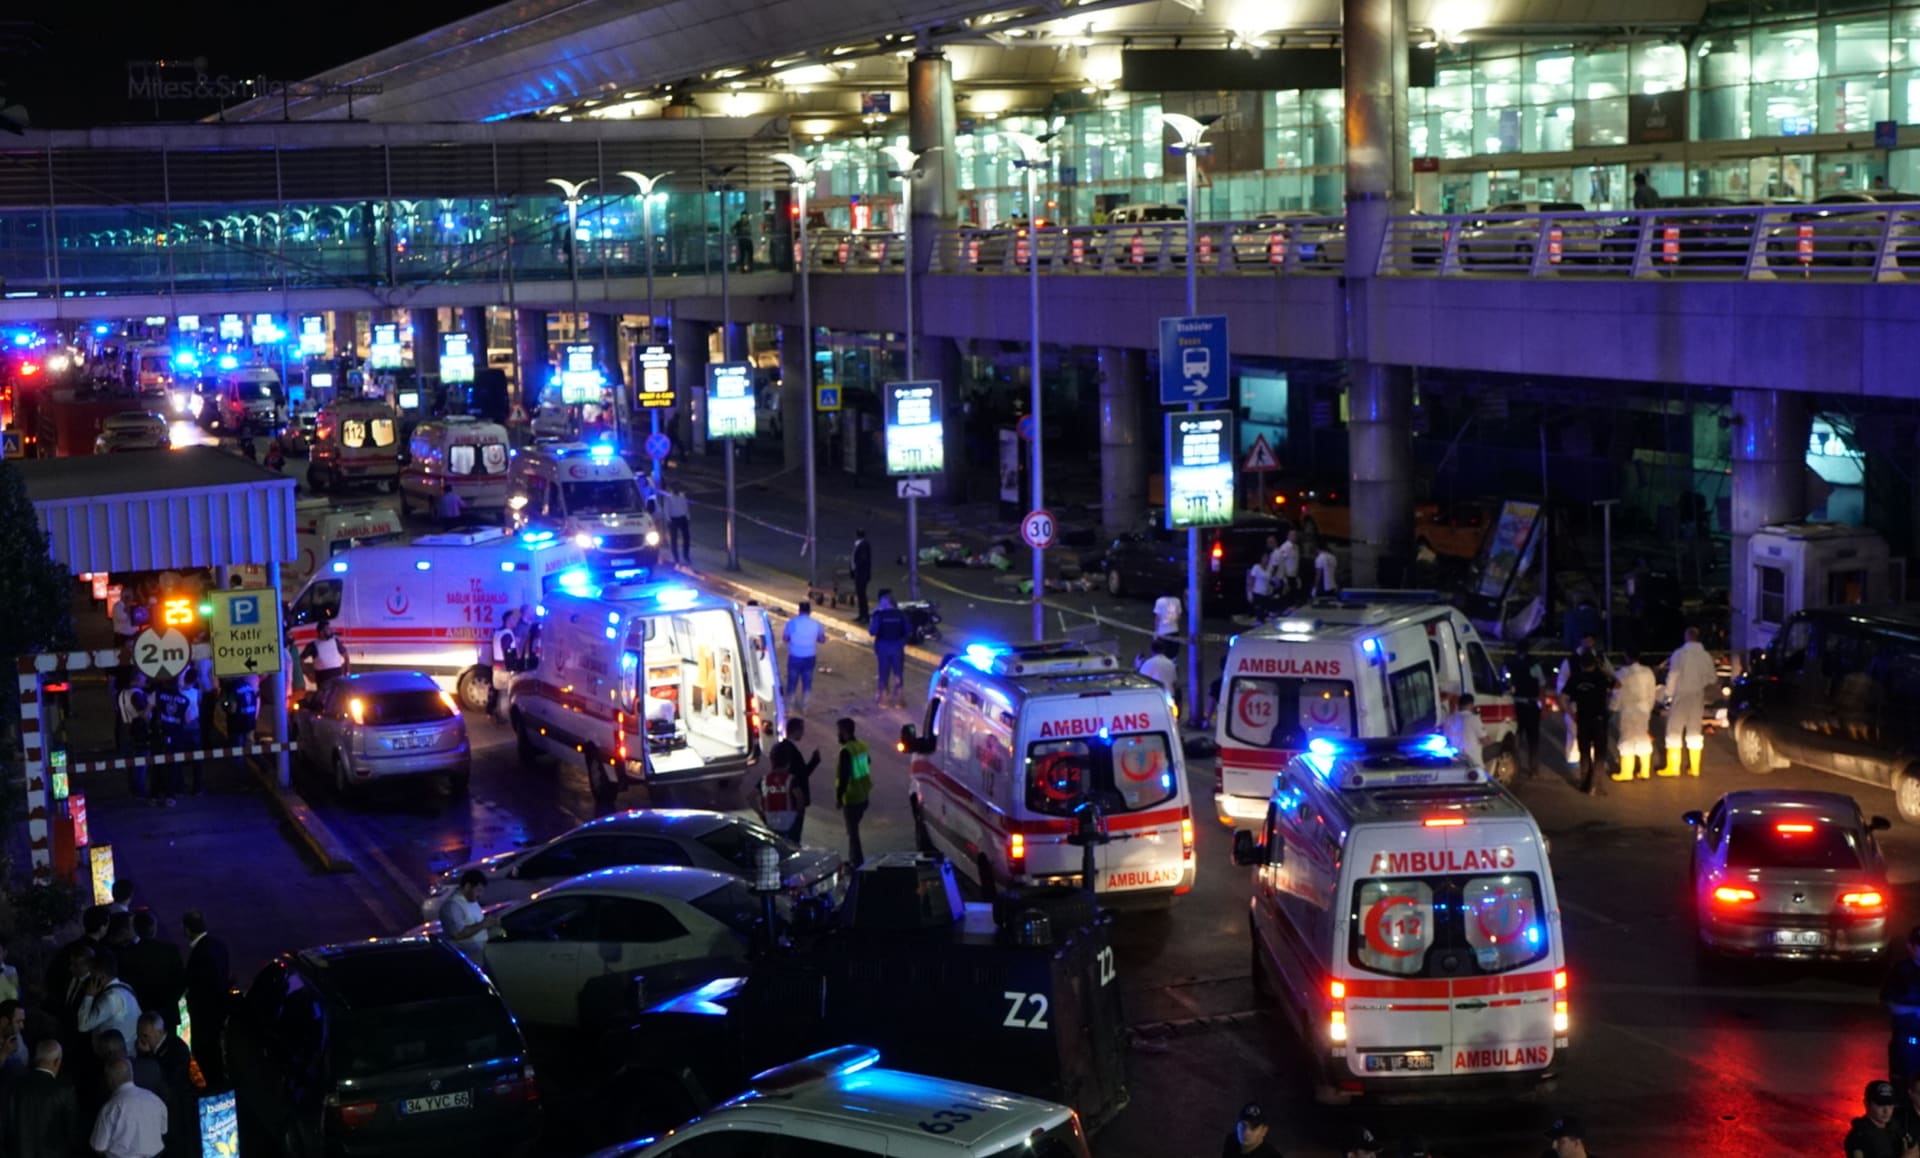 سفير السعودية في تركيا: عدد القتلى السعوديين في مطار أتاتورك 2 فقط وليس 6 بعد التدقيق في وثائق الضحايا